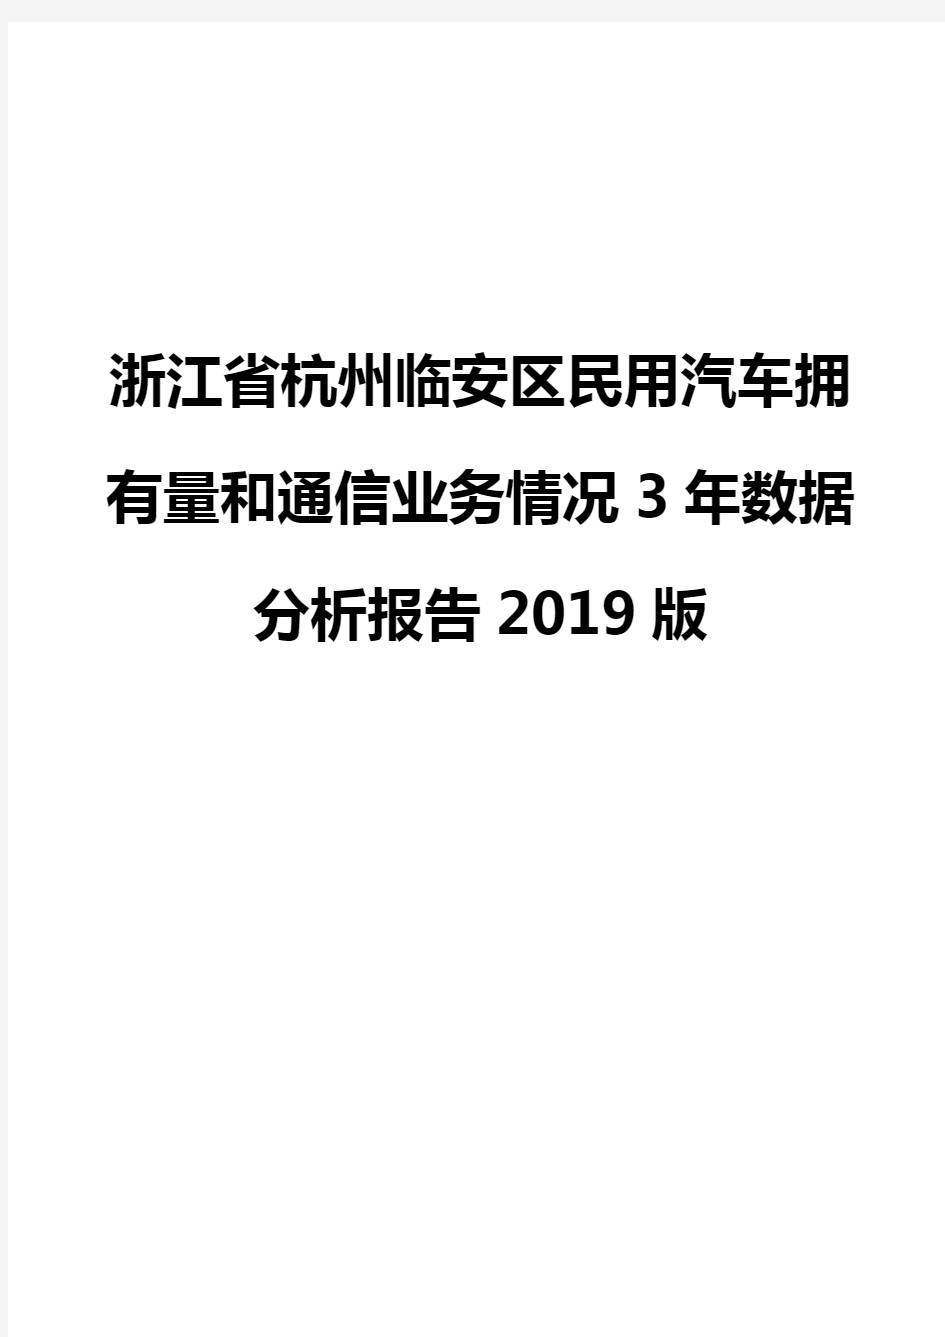 浙江省杭州临安区民用汽车拥有量和通信业务情况3年数据分析报告2019版